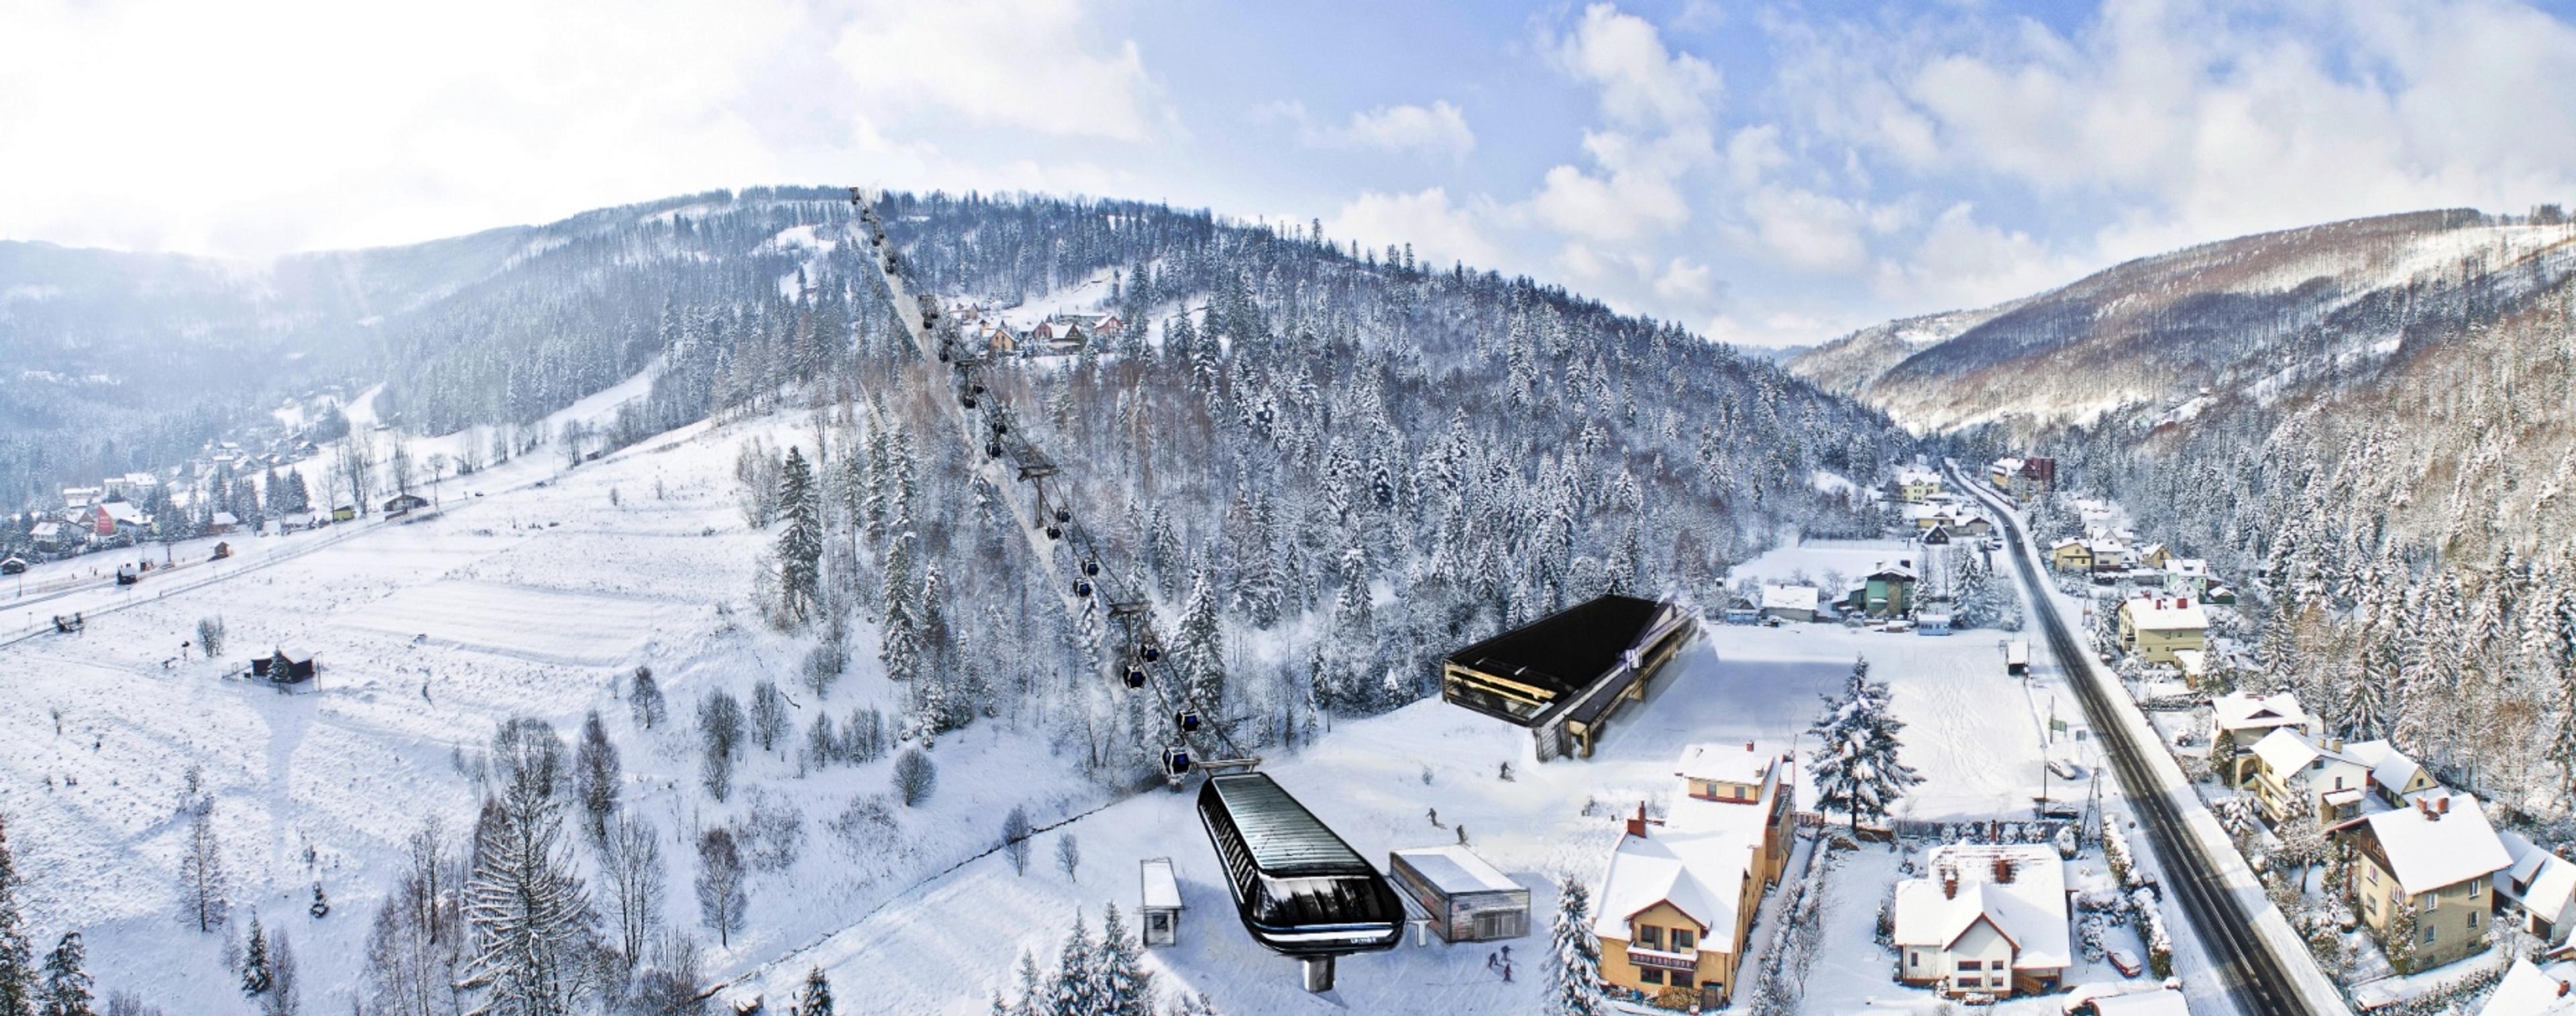 Wizualizacja nowej kolei gondolowej, Szczyrk Mountain Resort